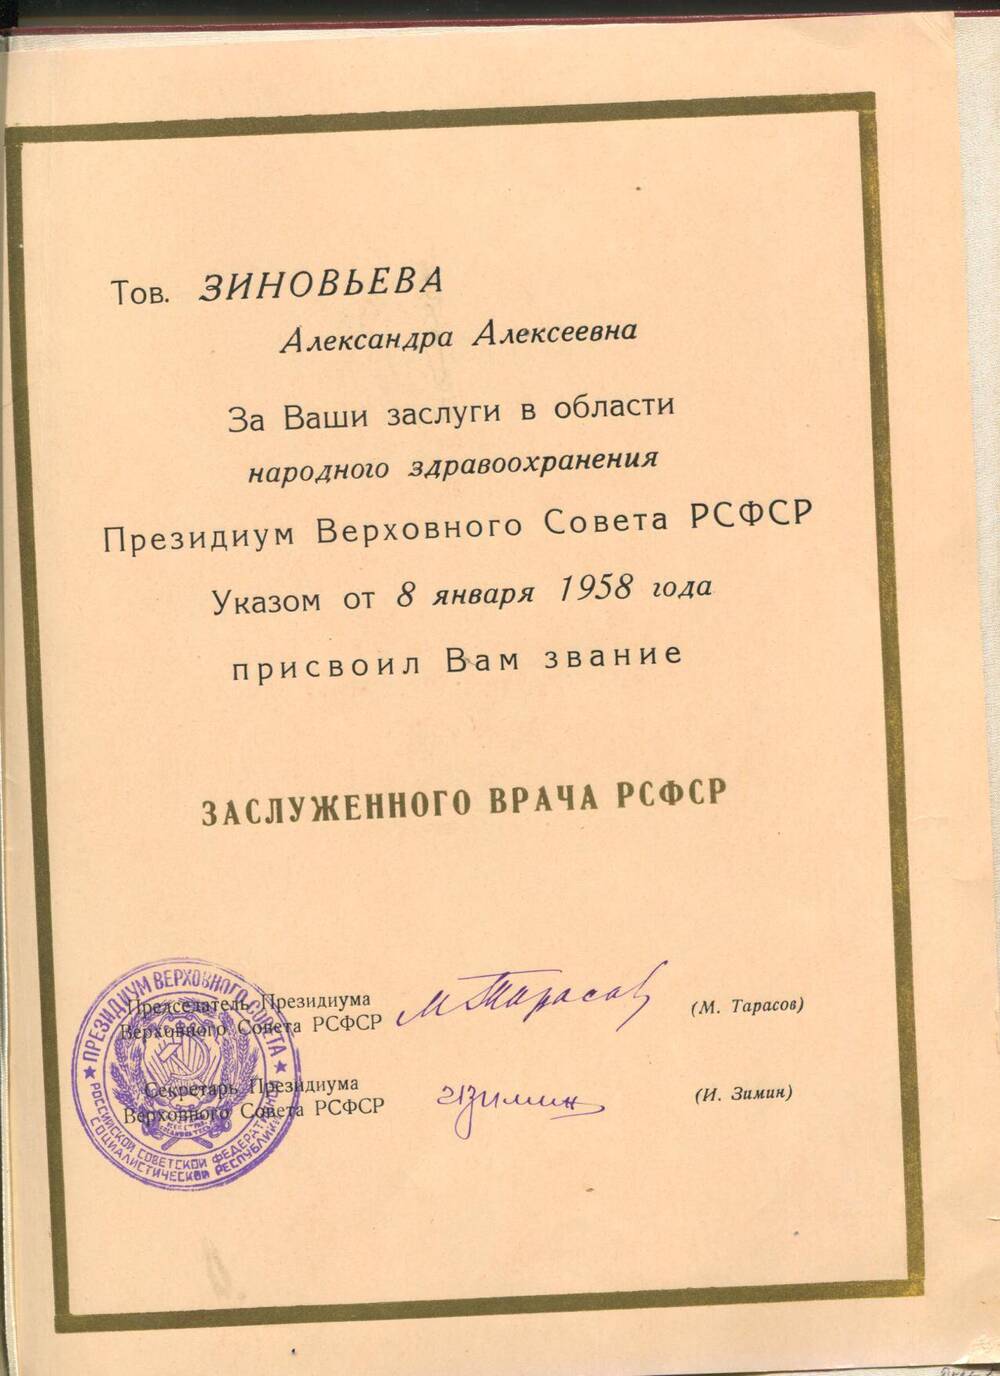 Почетная грамота заслуженного врача РСФСР. Вручена А.А. Зиновьевой. г.Москва, 8 января 1958 г.